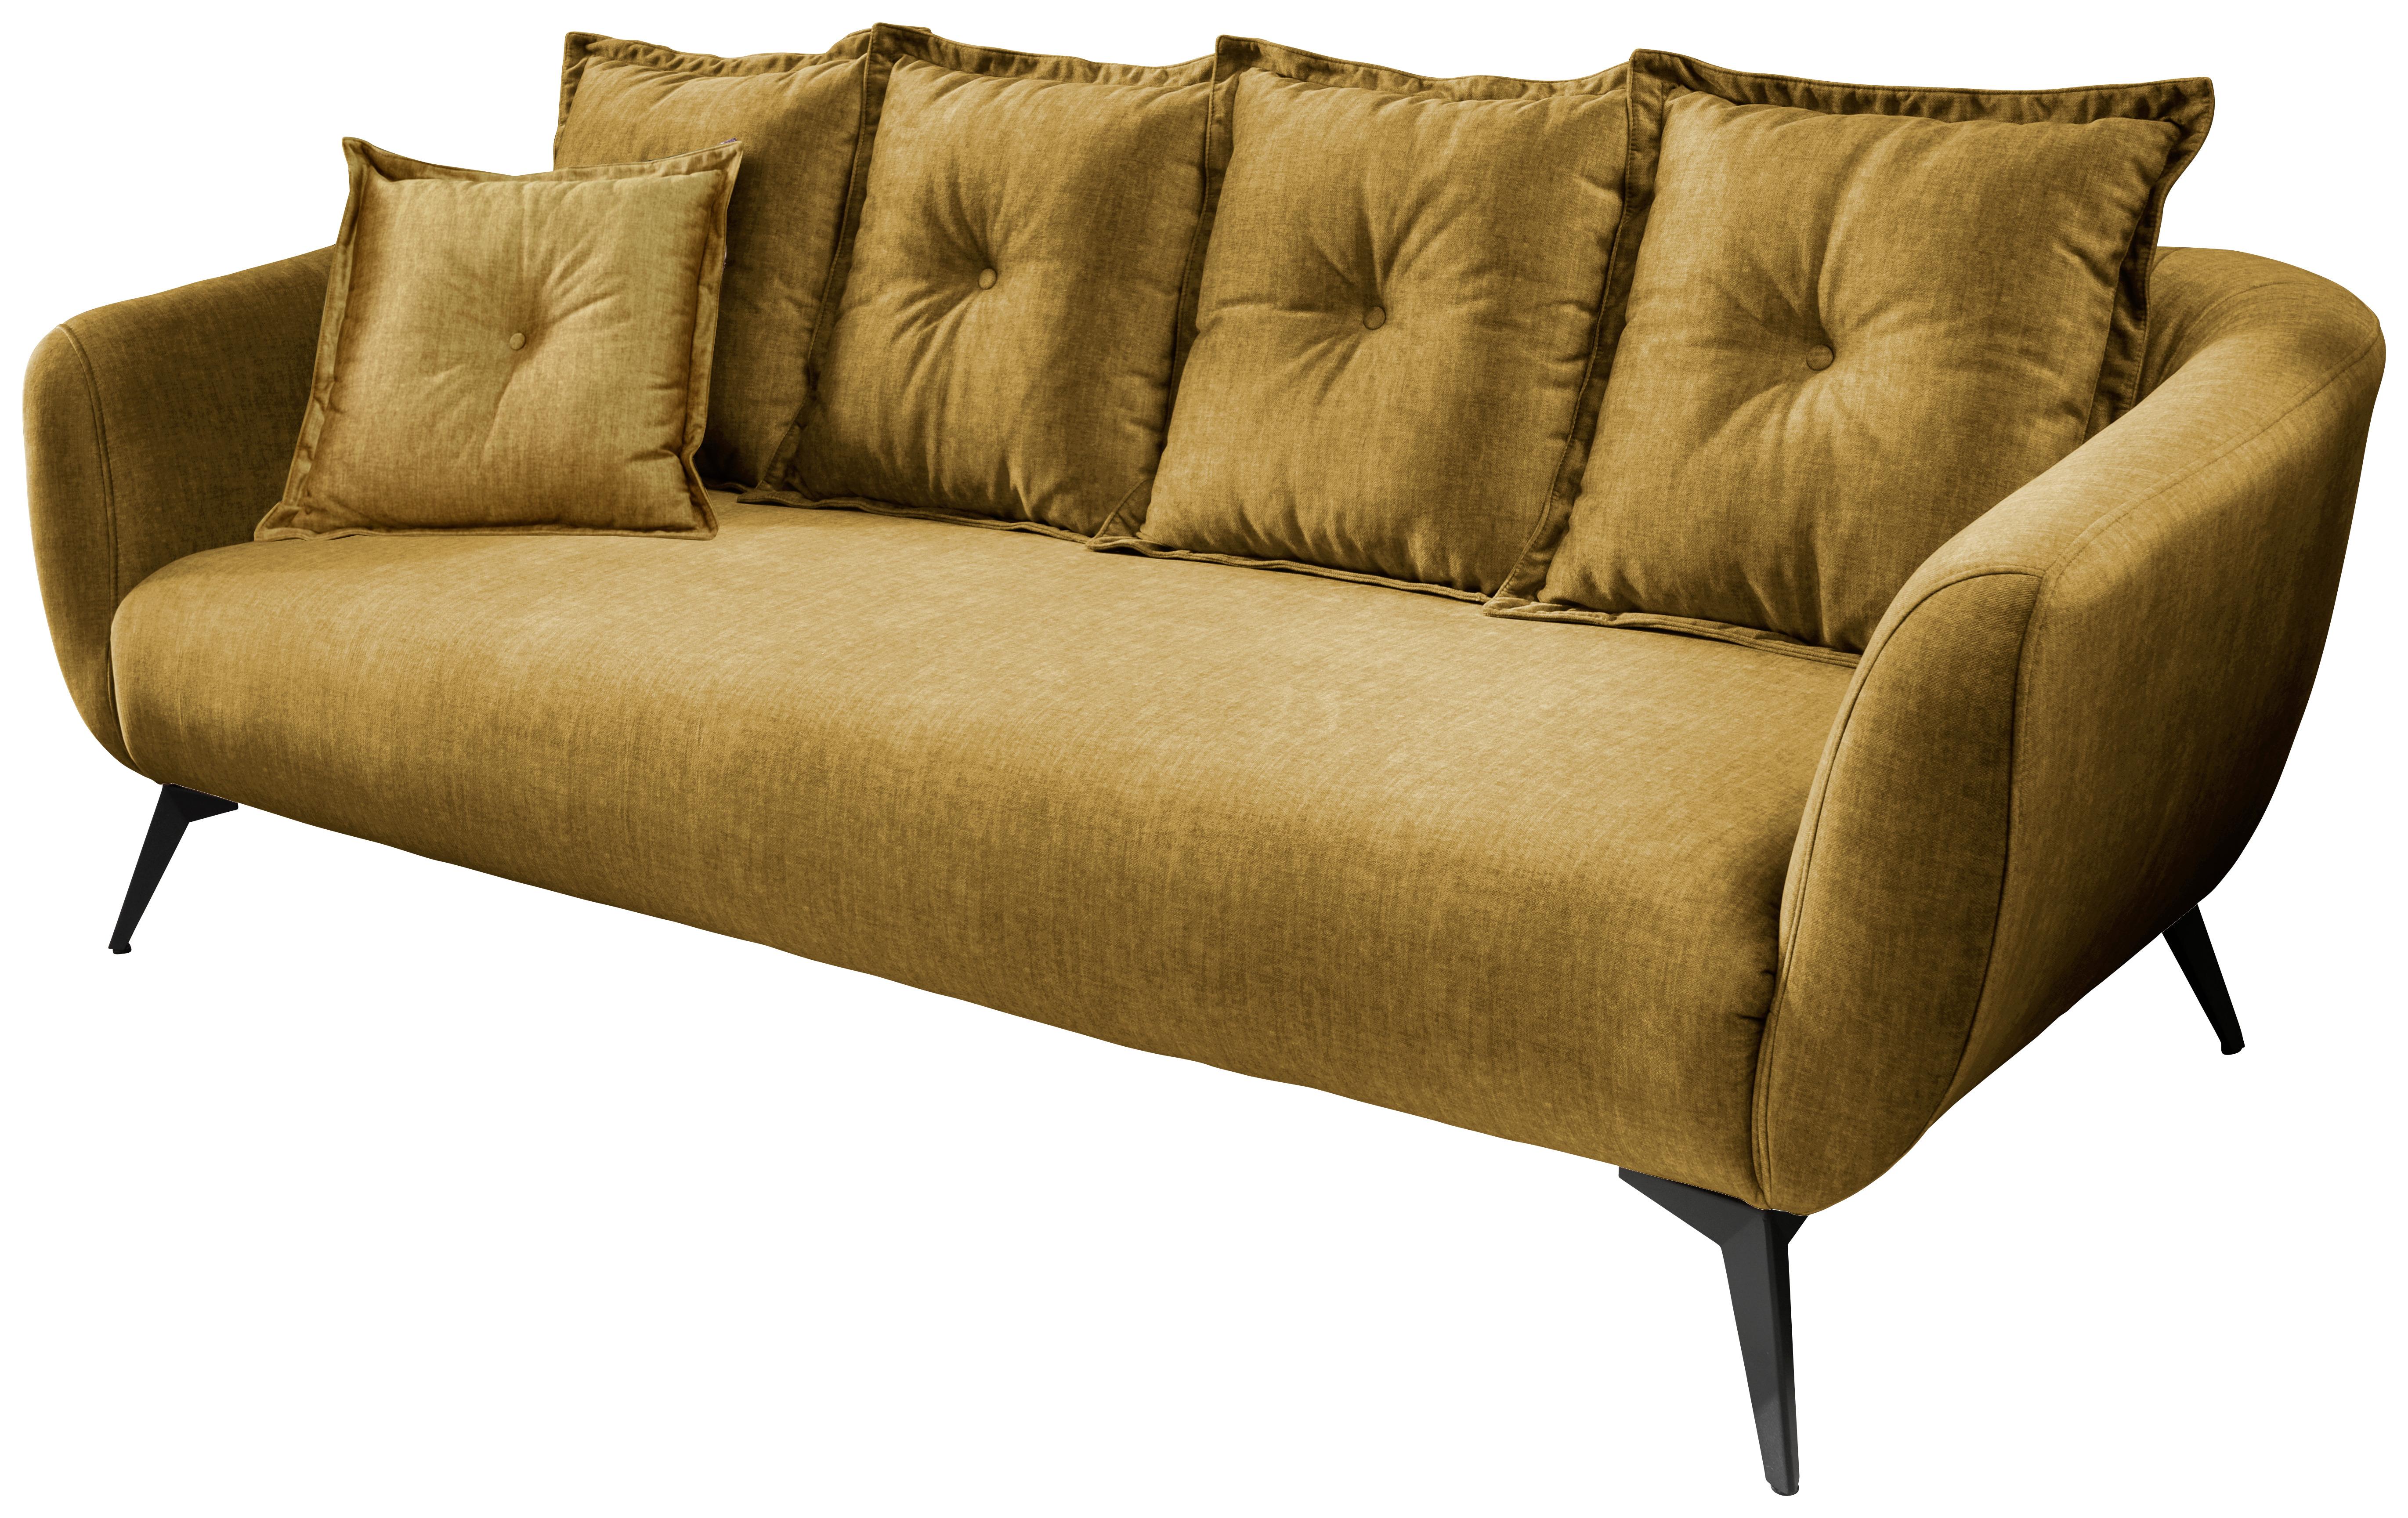 3-Sitzer-Sofa Baggio mit Kissen Gelb - Gelb/Schwarz, MODERN, Holz/Textil (236/94/103cm) - Livetastic